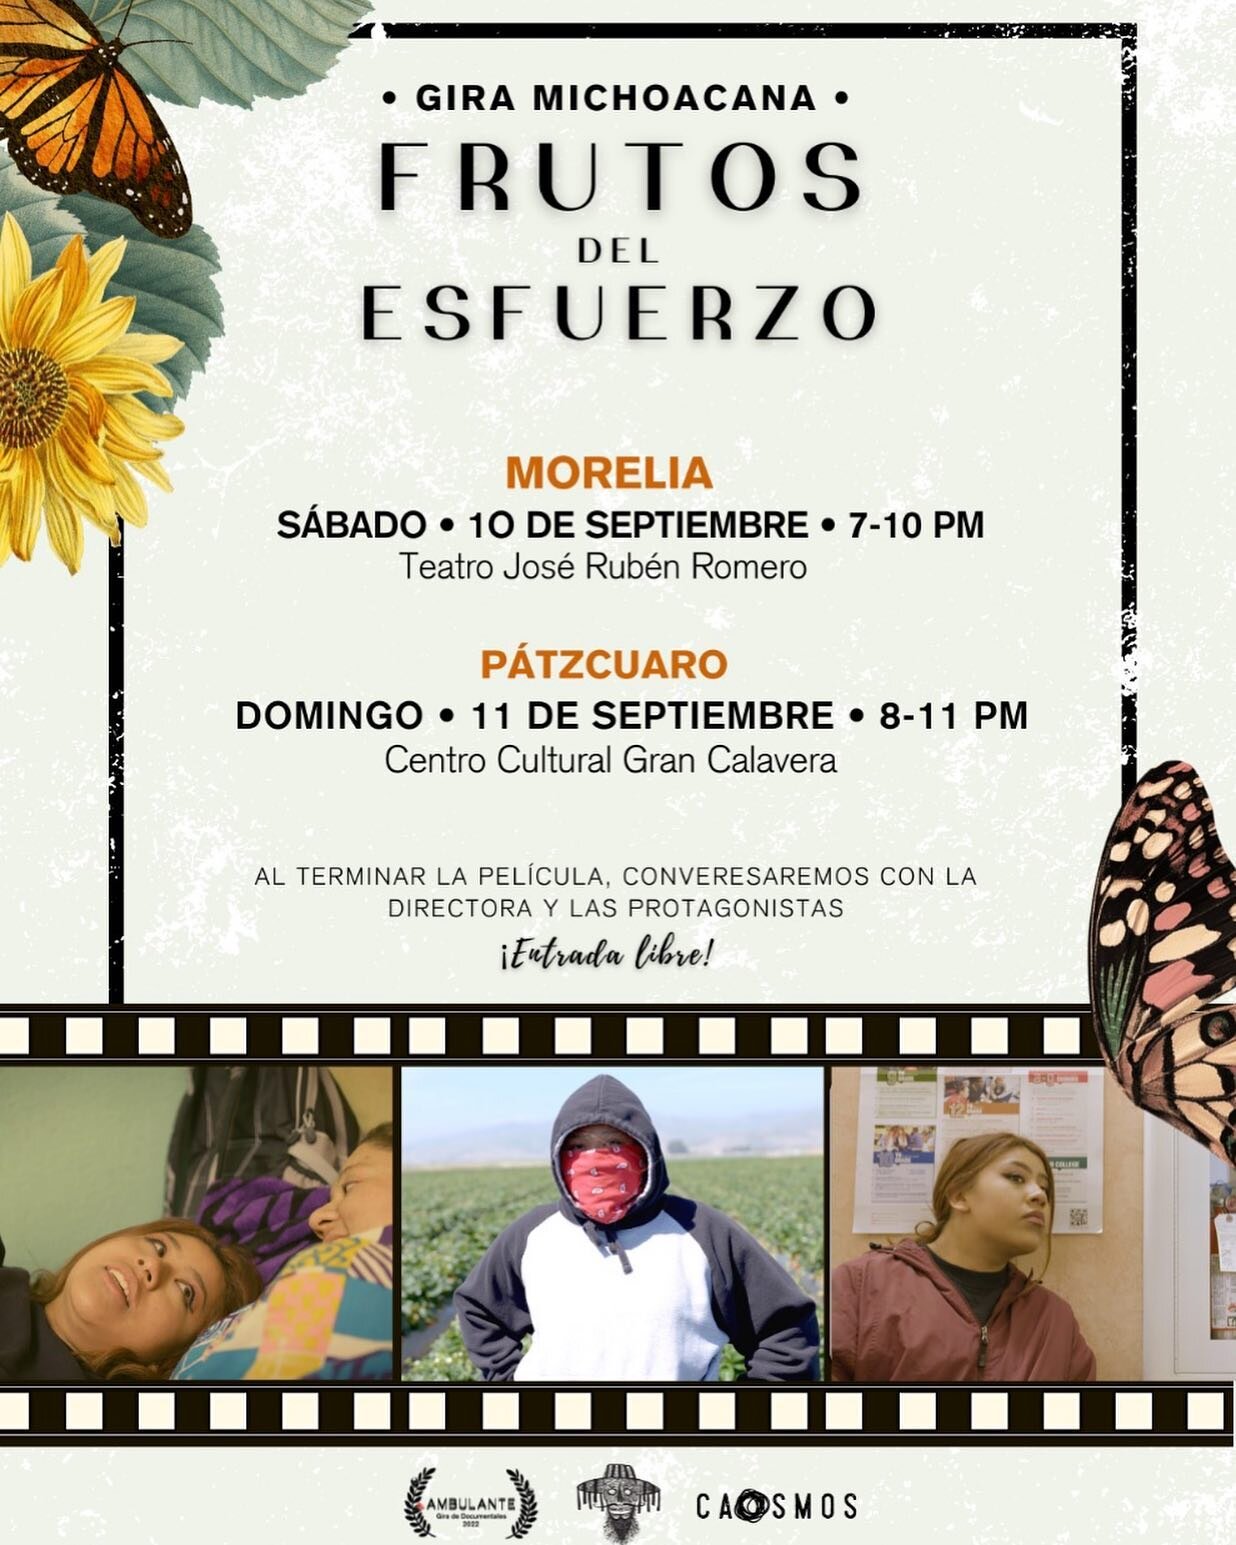 📣 Que vivan los trabajadores! Feliz #D&iacute;aDelTrabajo ✊🏽 &iexcl;Esta semana nos vamos a Michoac&aacute;n para nuestra gira por M&eacute;xico!

🗓 10 de septiembre (7-10)
Teatro Jose Rub&eacute;n Romero 
Morelia

🗓 11 de septiembre (8-11)
Centr